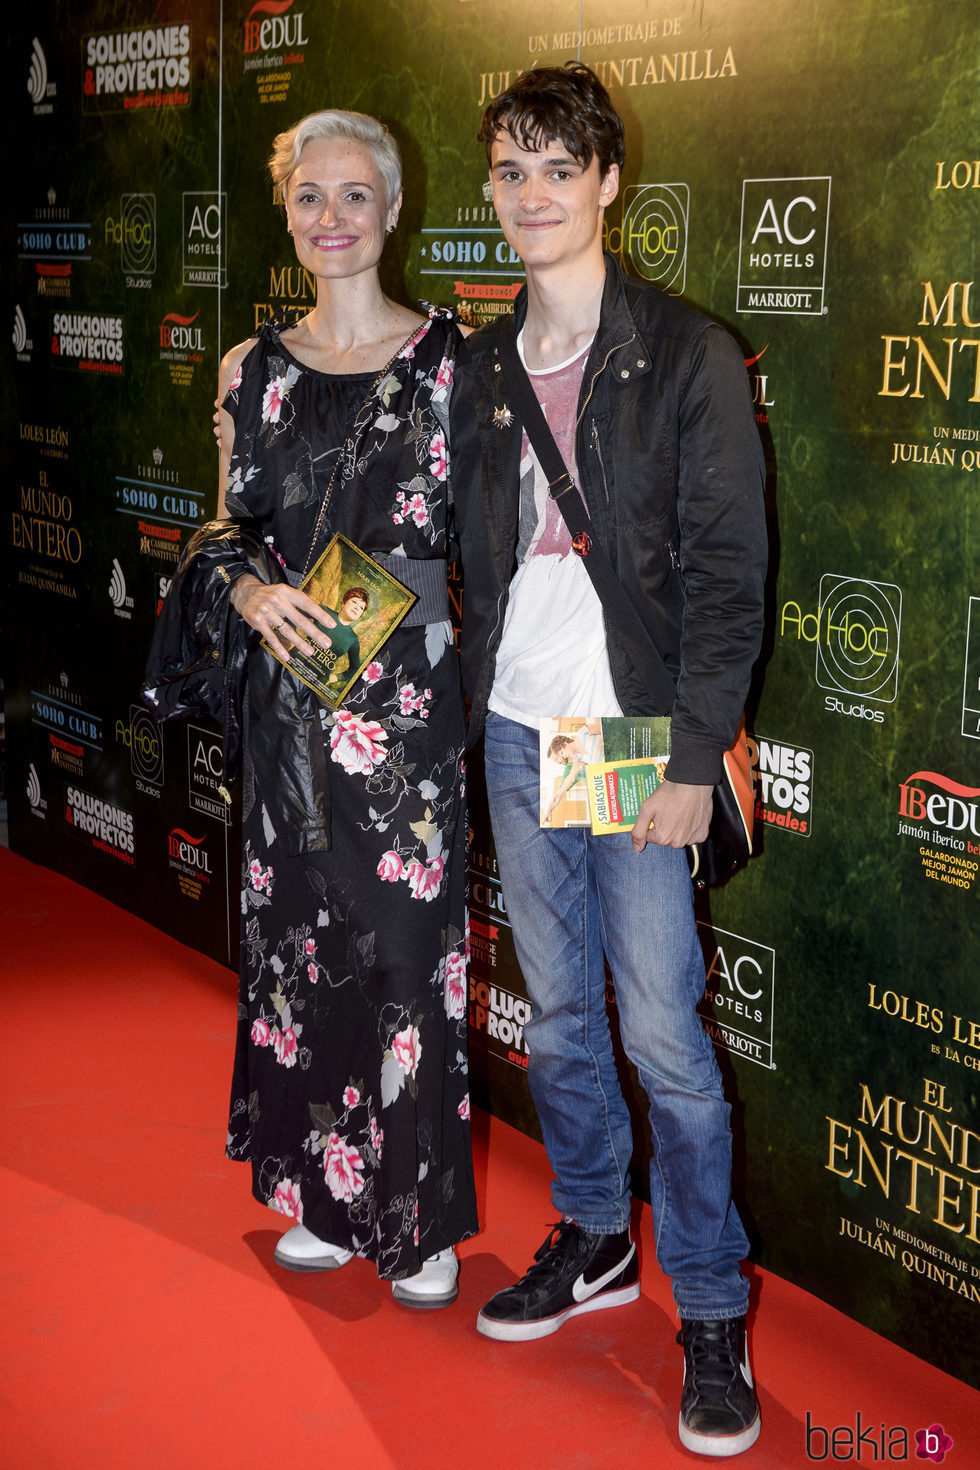 Laura Pamplona y su hijo en el estreno de 'El mundo entero'